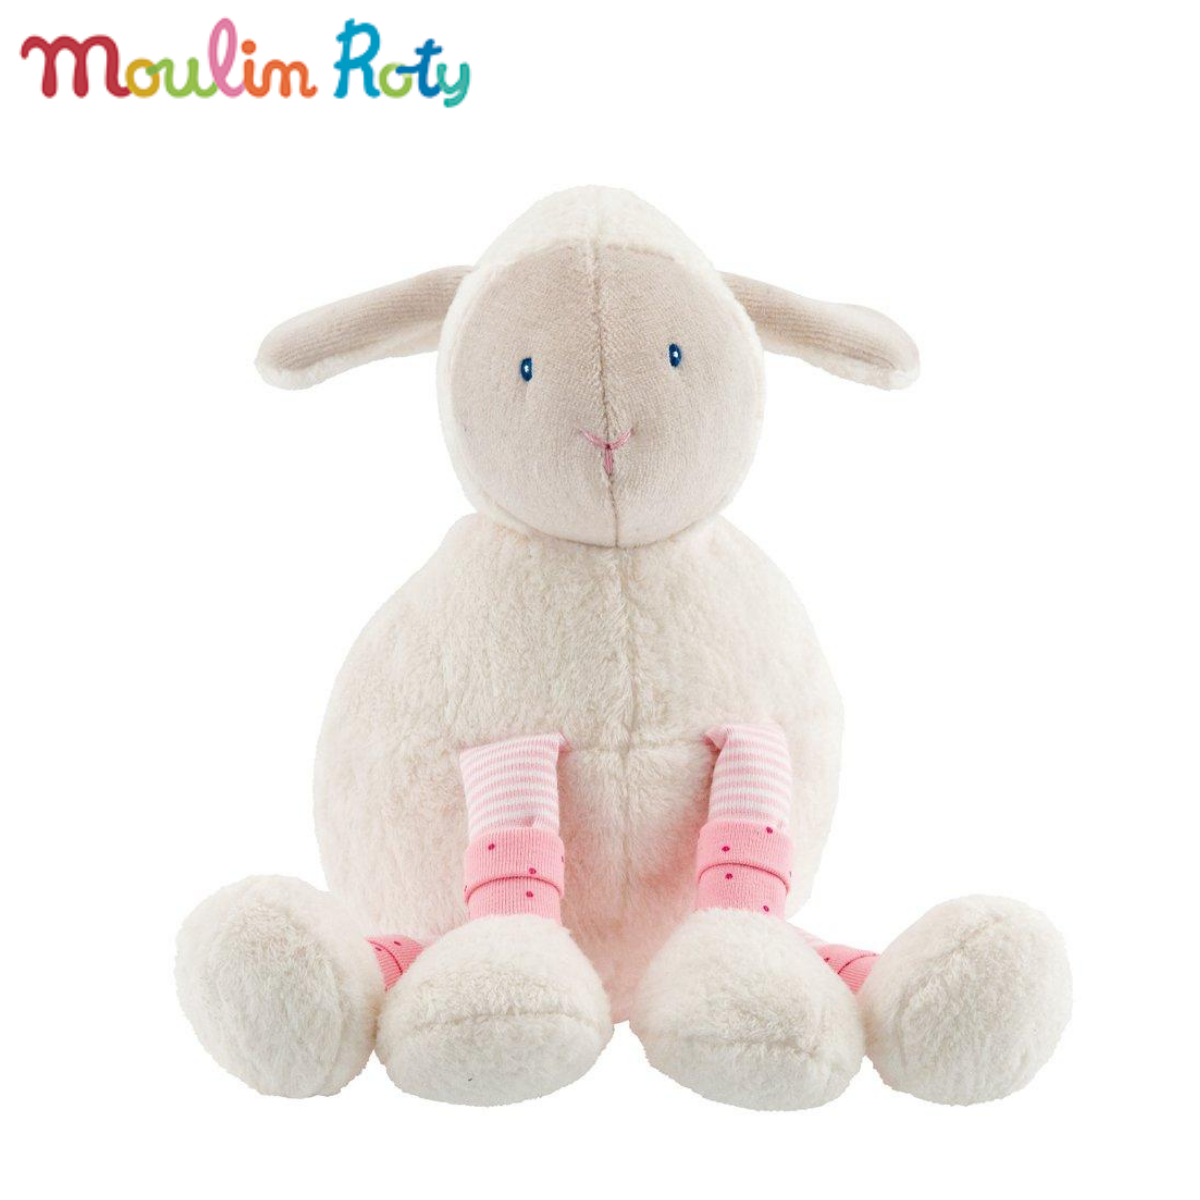 Moulin Roty ตุ๊กตาแกะ ตุ๊กตาออร์แกนิค ขนนุ่ม ปลอดภัย ผ้าใยธรรมชาติ100% สูง 18cm. Lila Sheep MR-643024